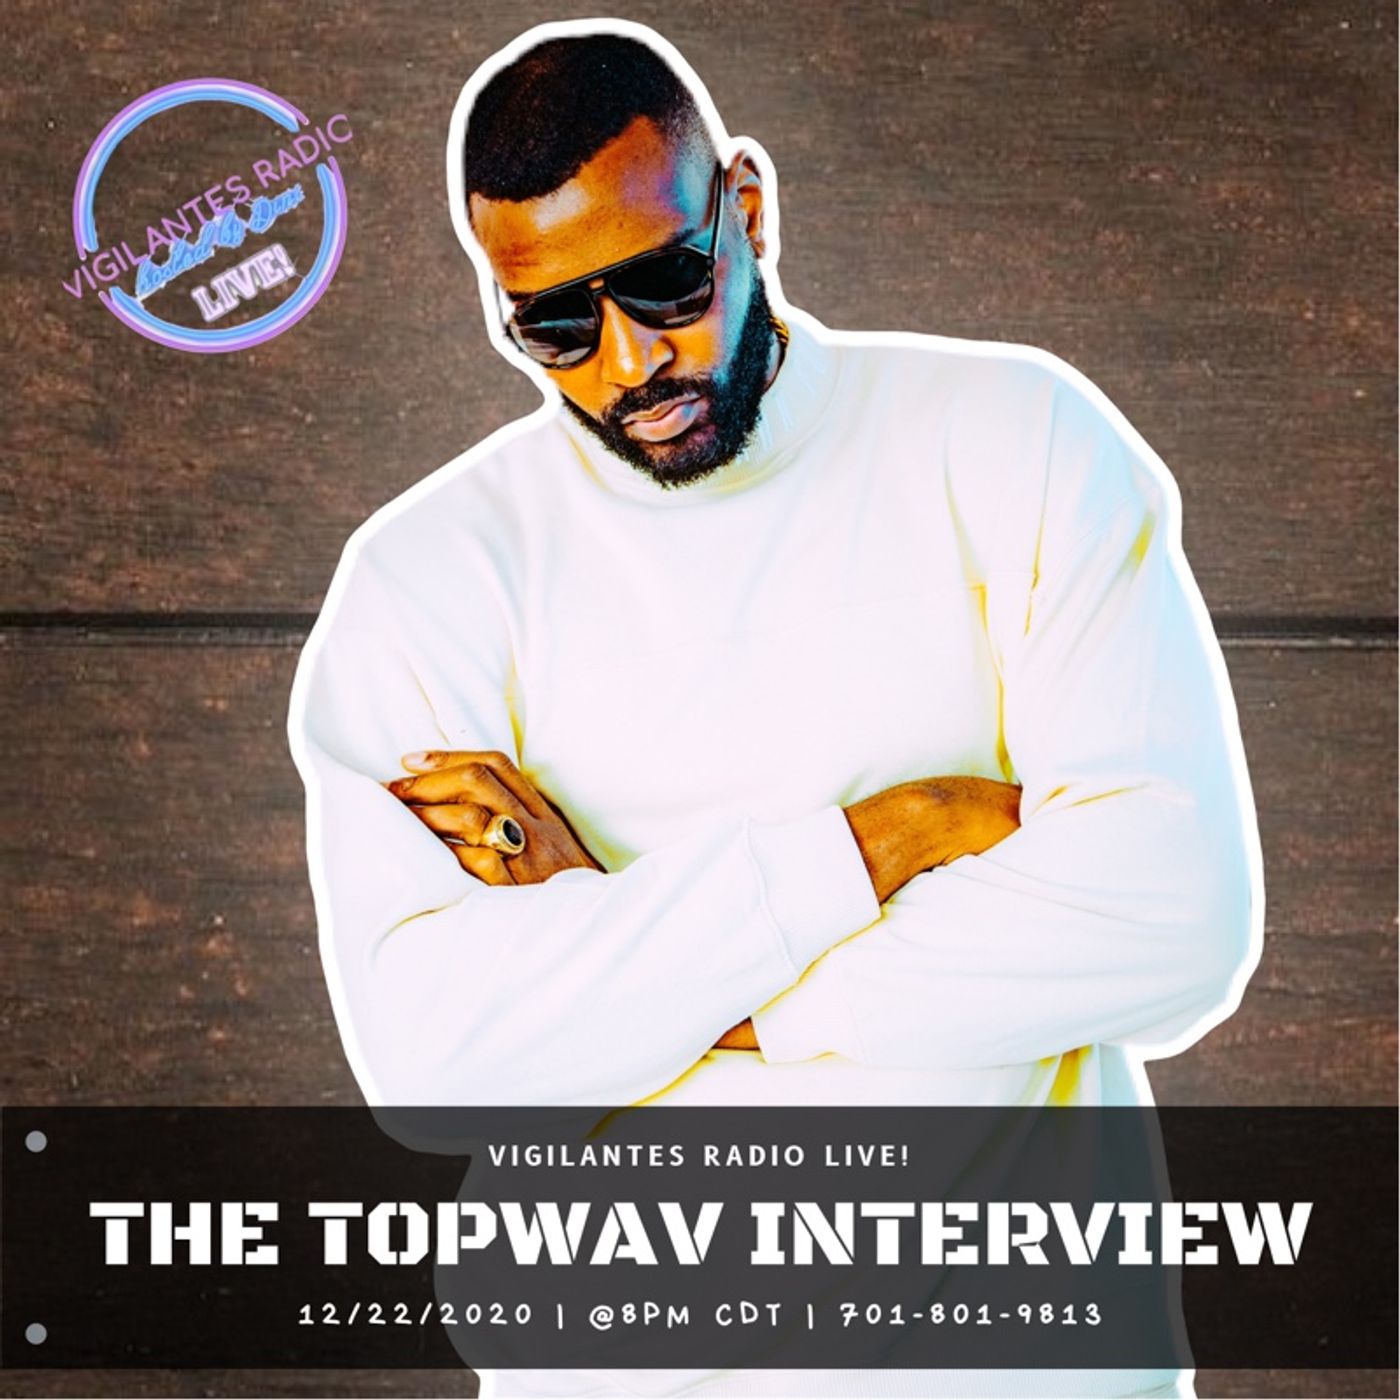 The TopWAV Interview. Image